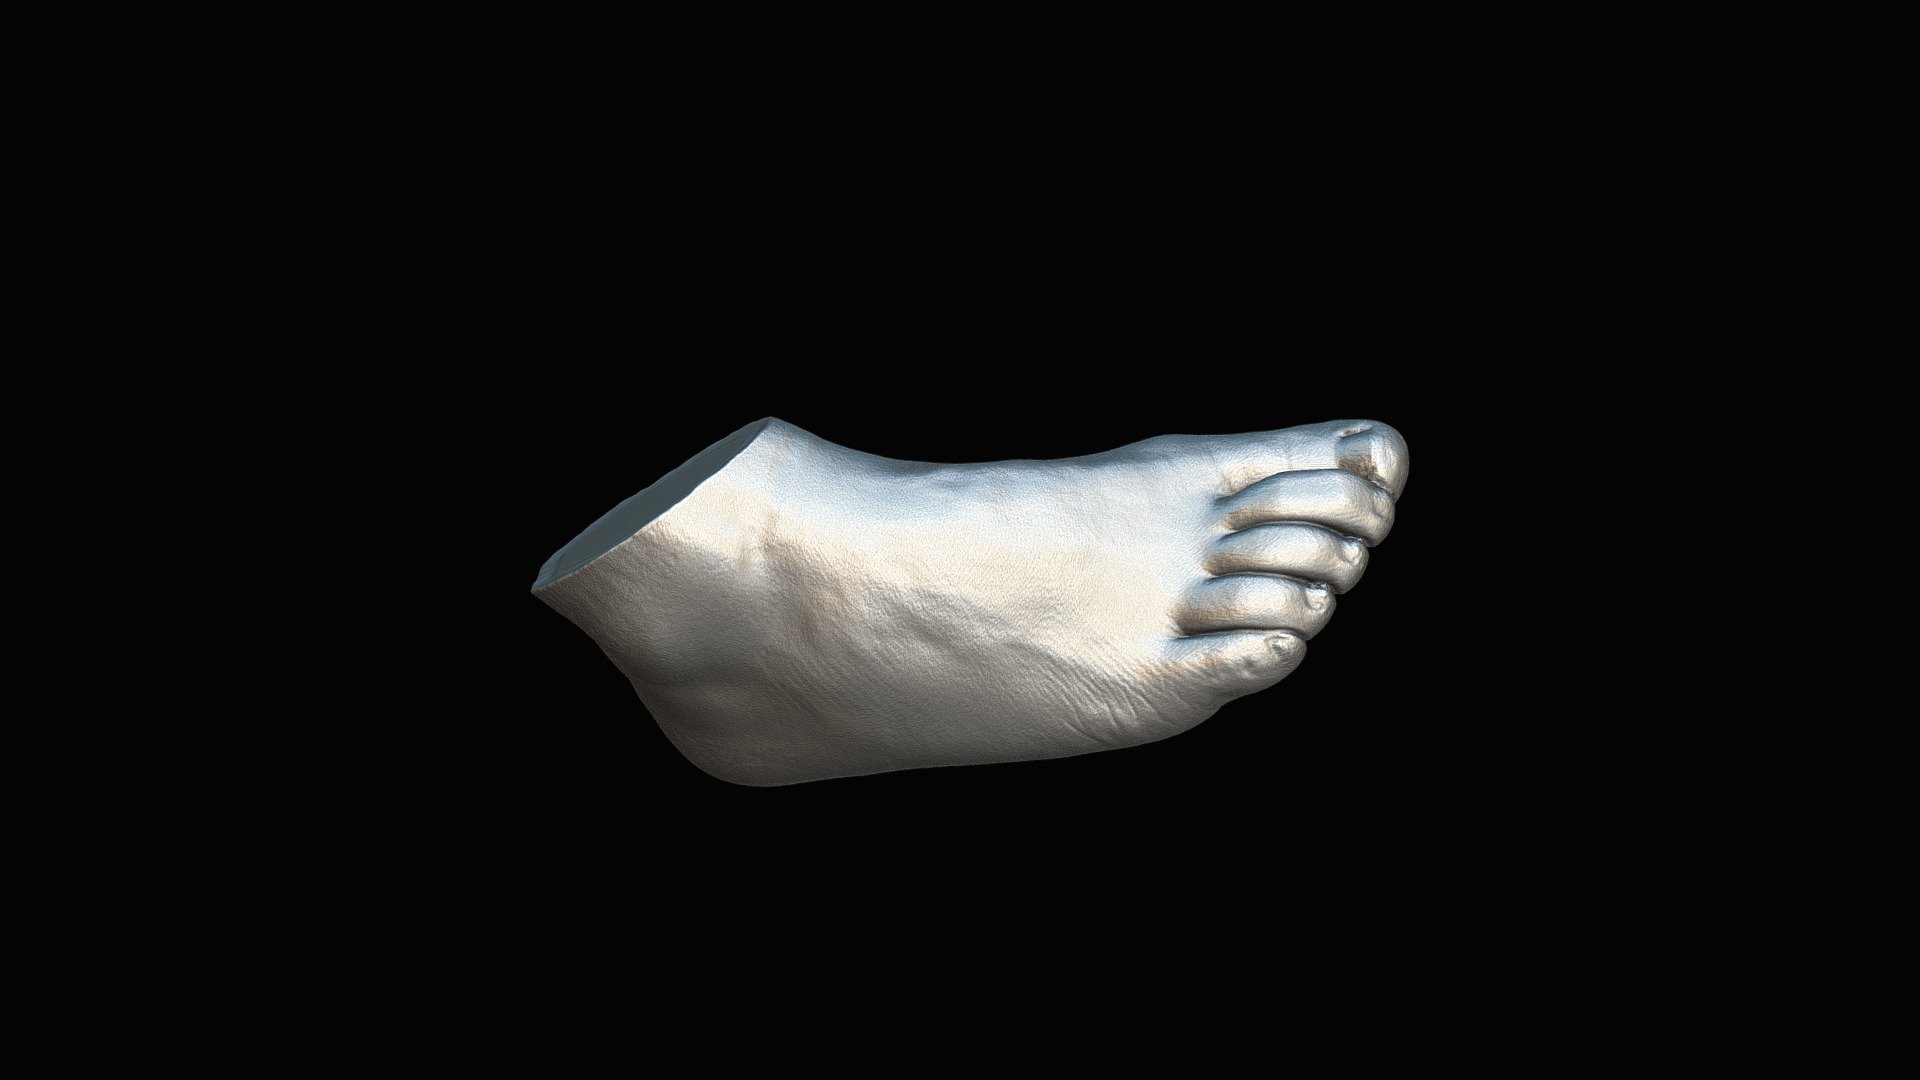 Human Foot